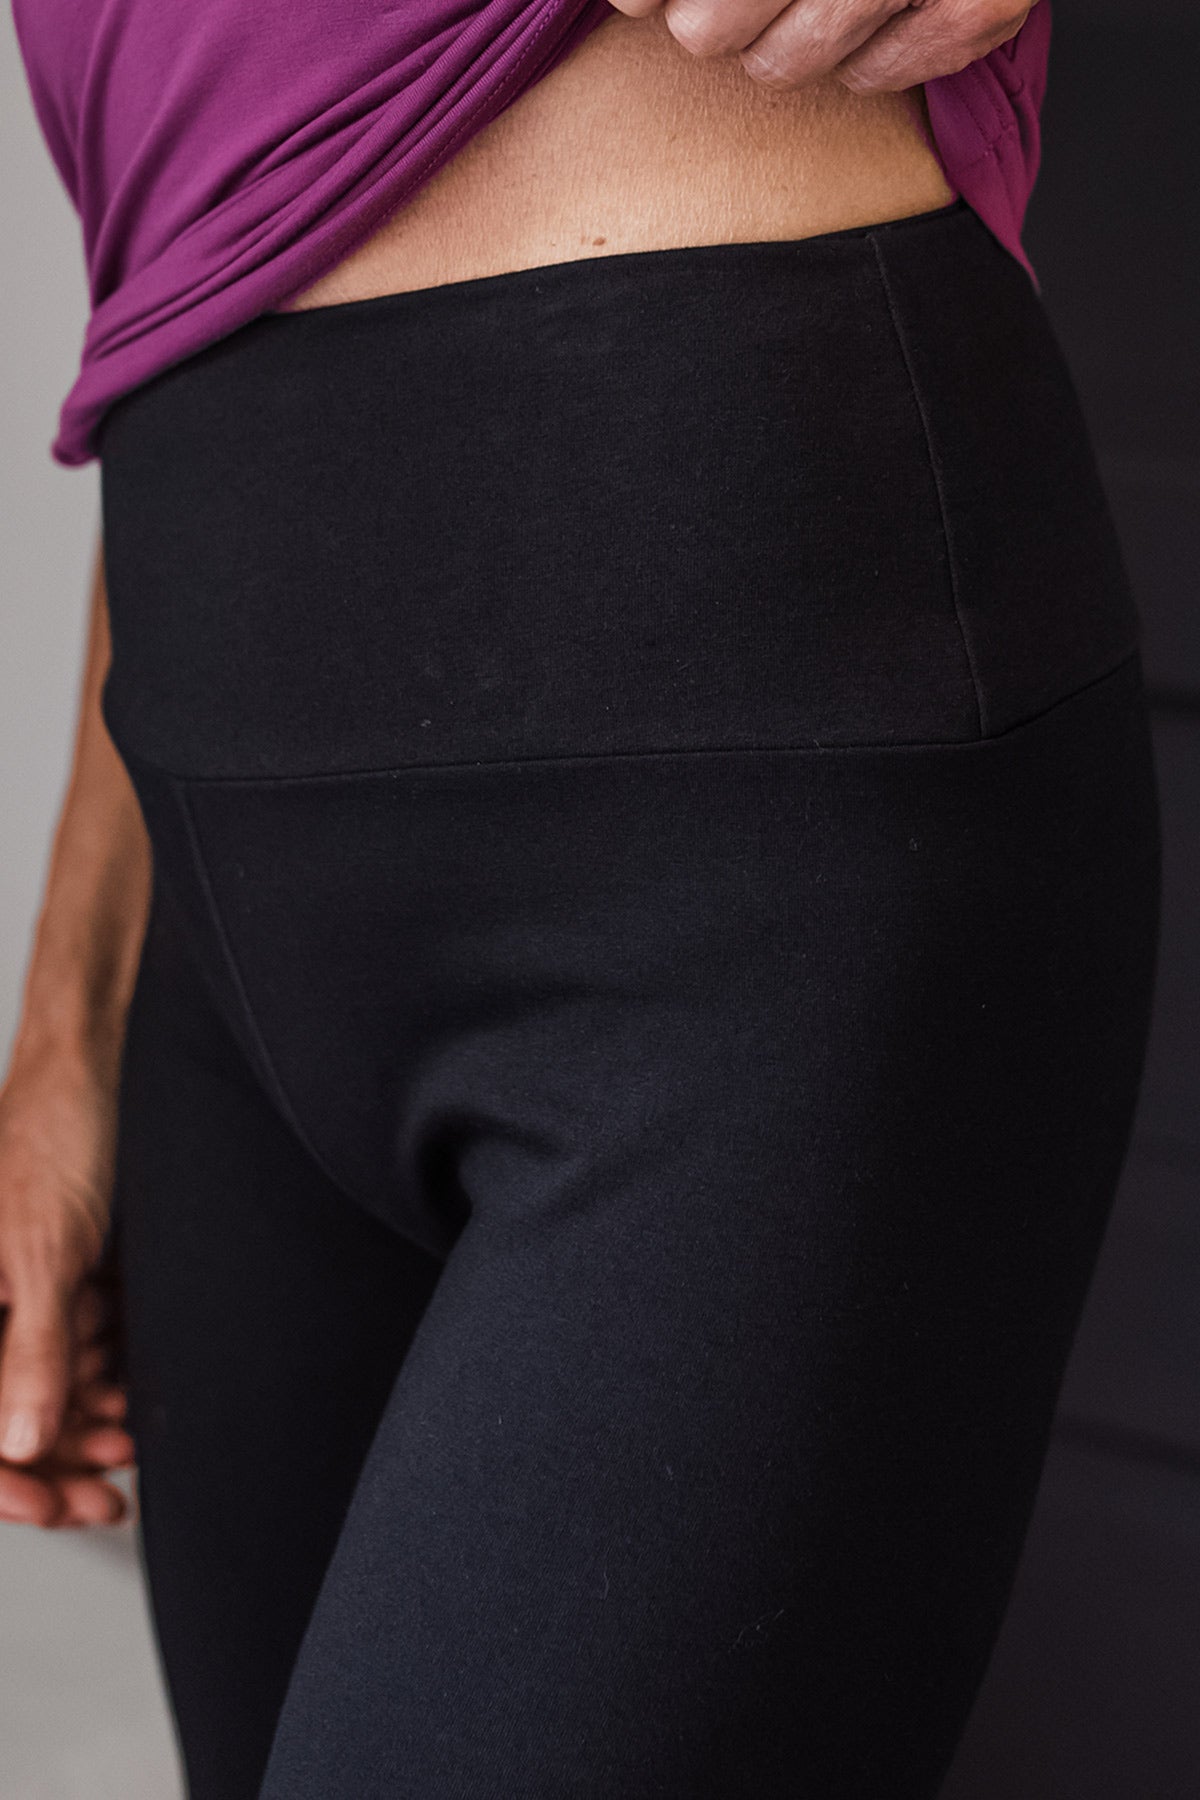 Womens High-Waisted Leggings Bamboo Fiber Very Soft Full-length Yoga Pants  FS919 | eBay